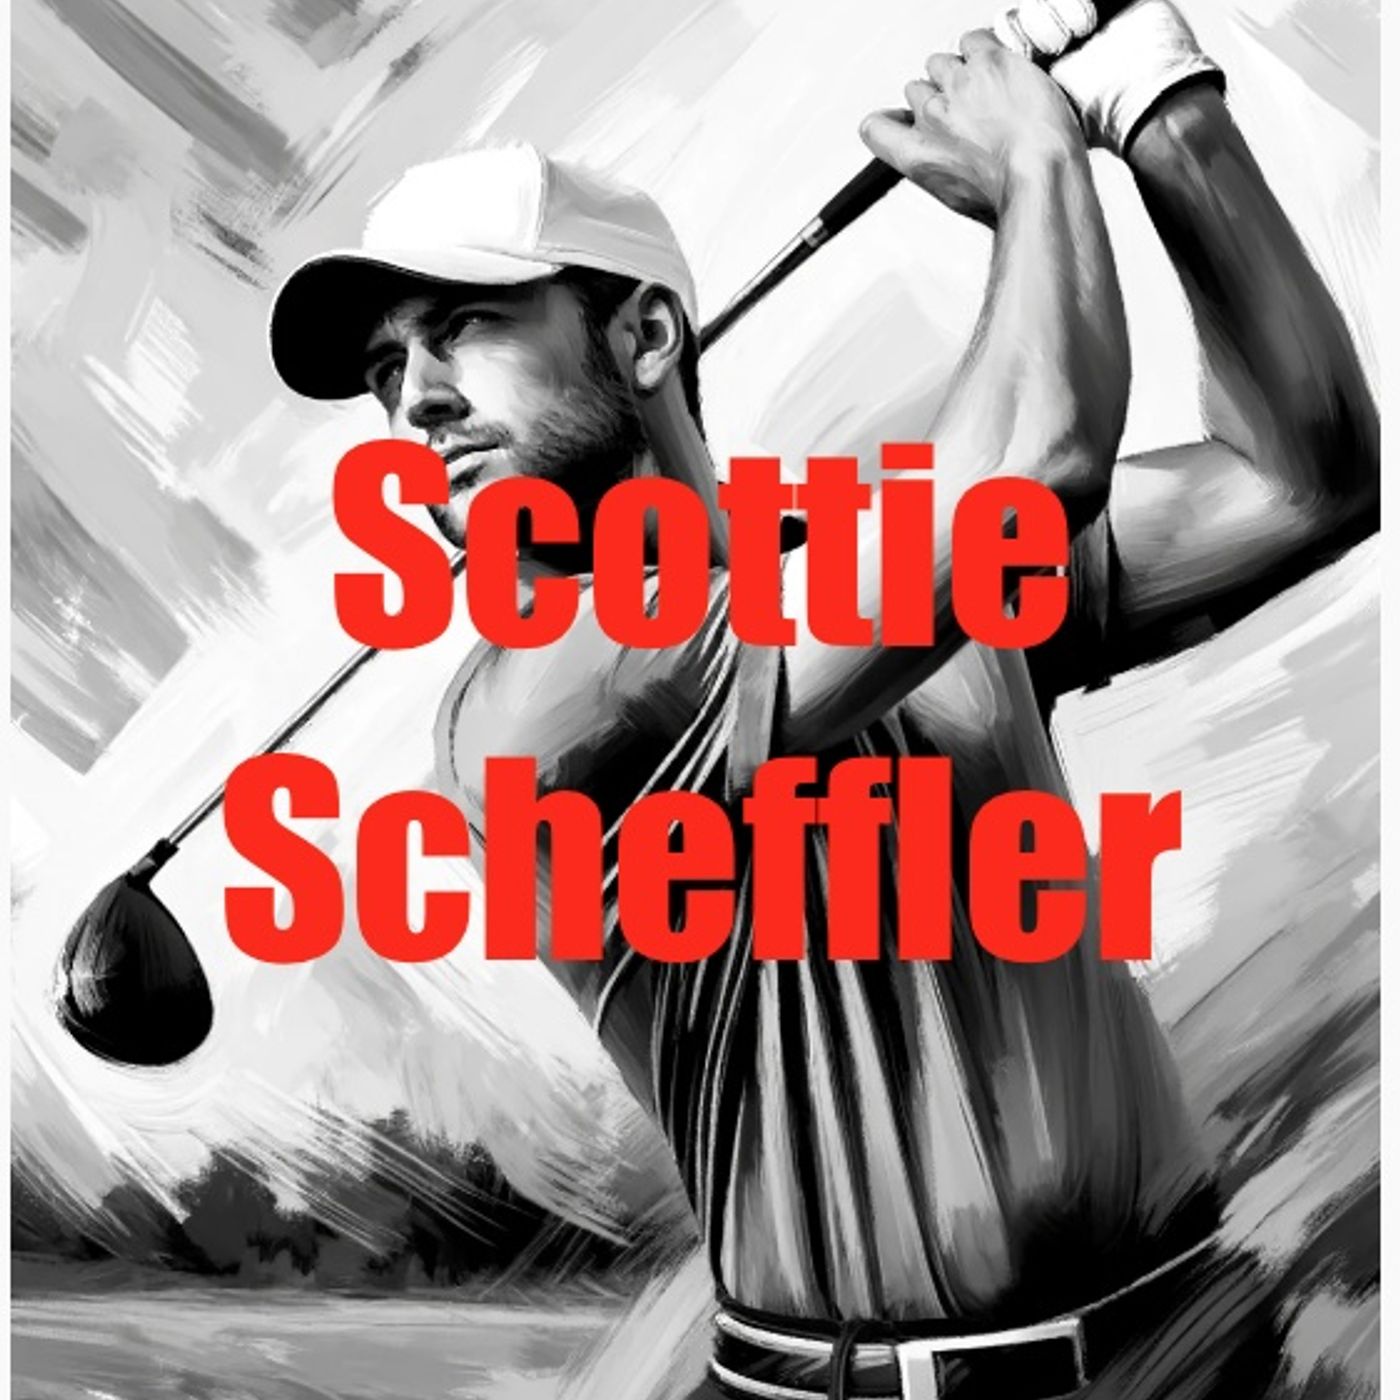 Scottie Scheffler